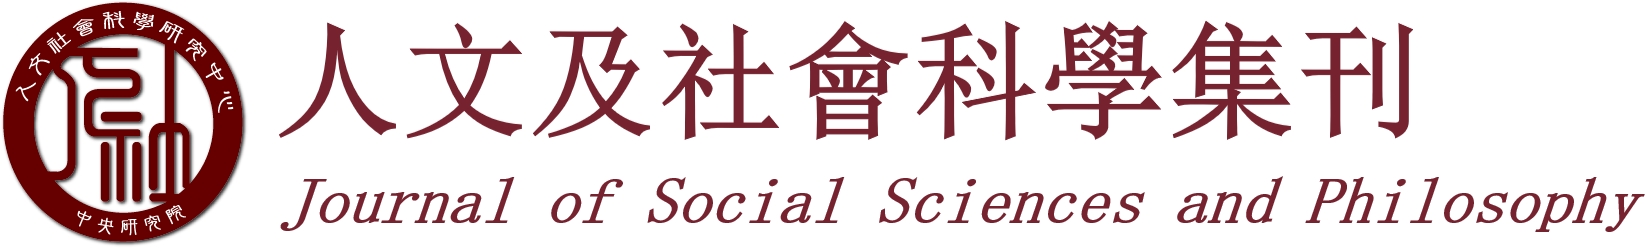 logo_m-人文及社會科學集刊